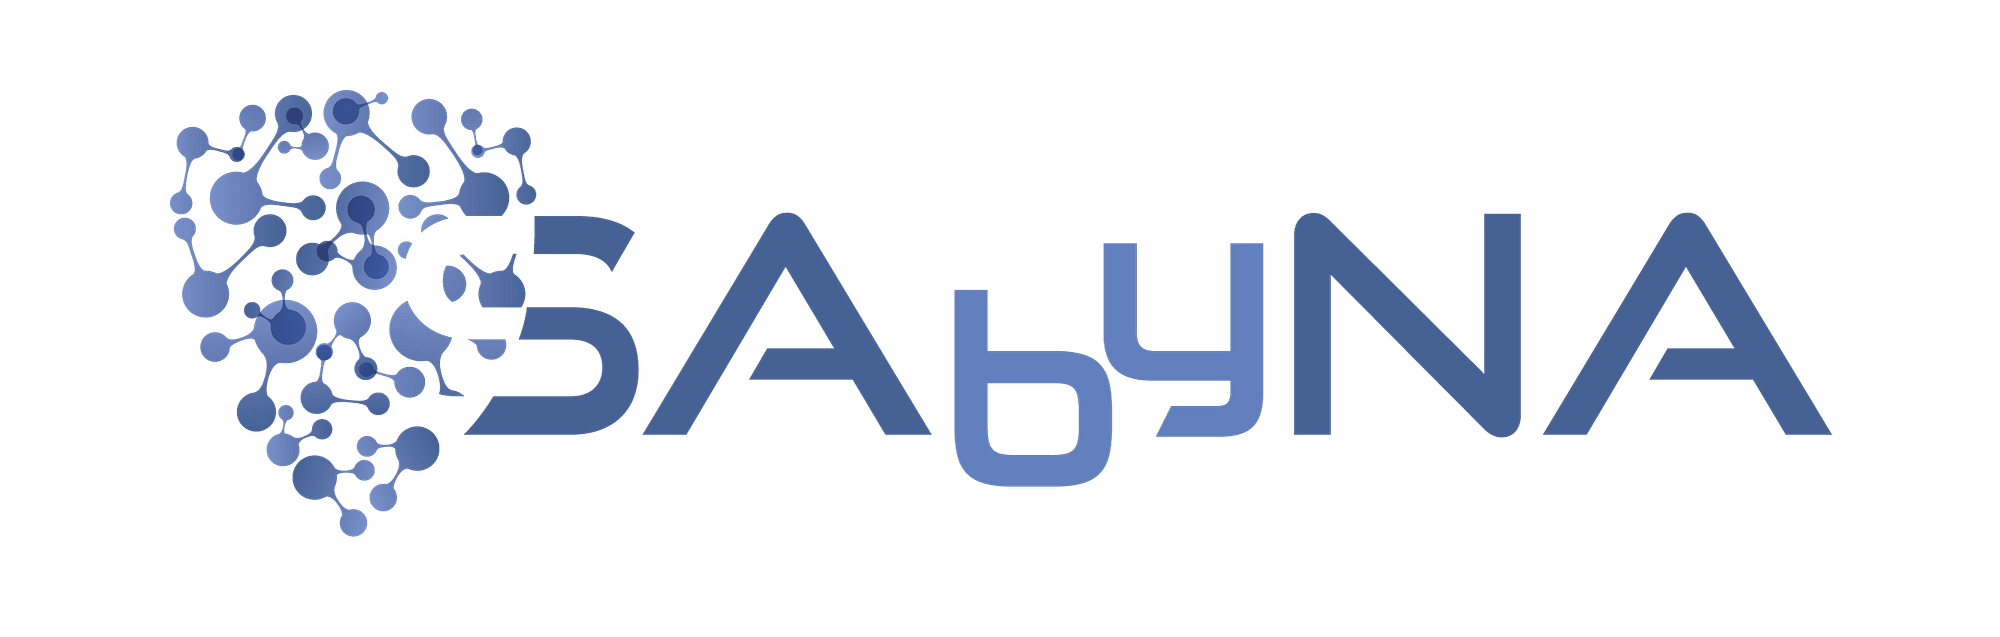 Logo-Sabyna-S-transp